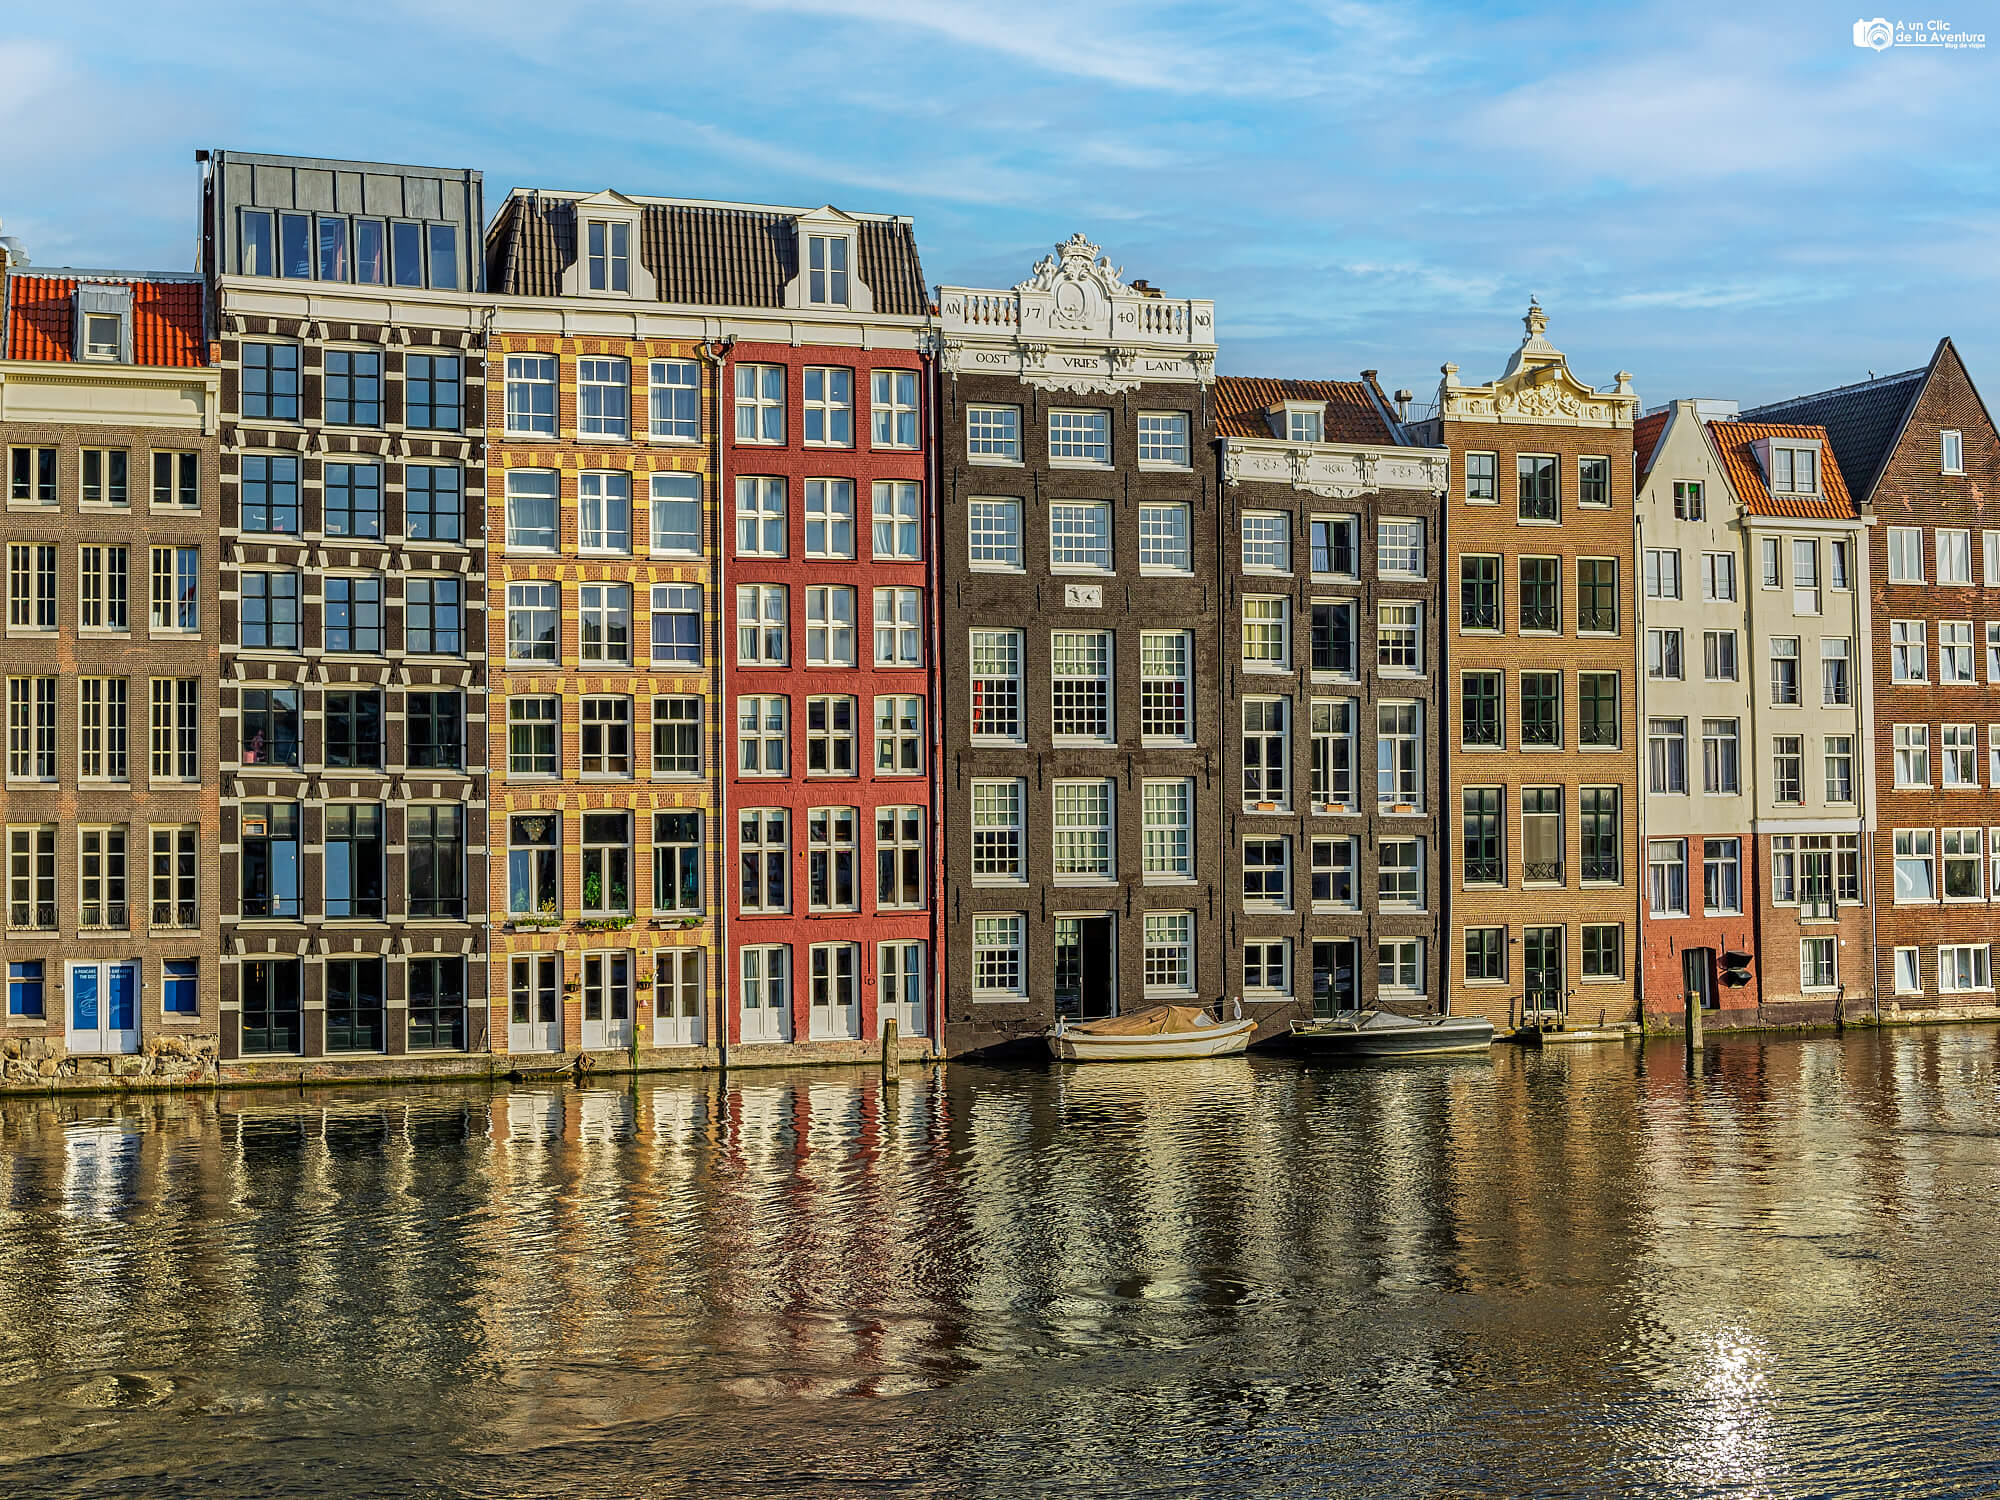 Casas del siglo XVIII de la calle Damrak, que ver en Amsterdam